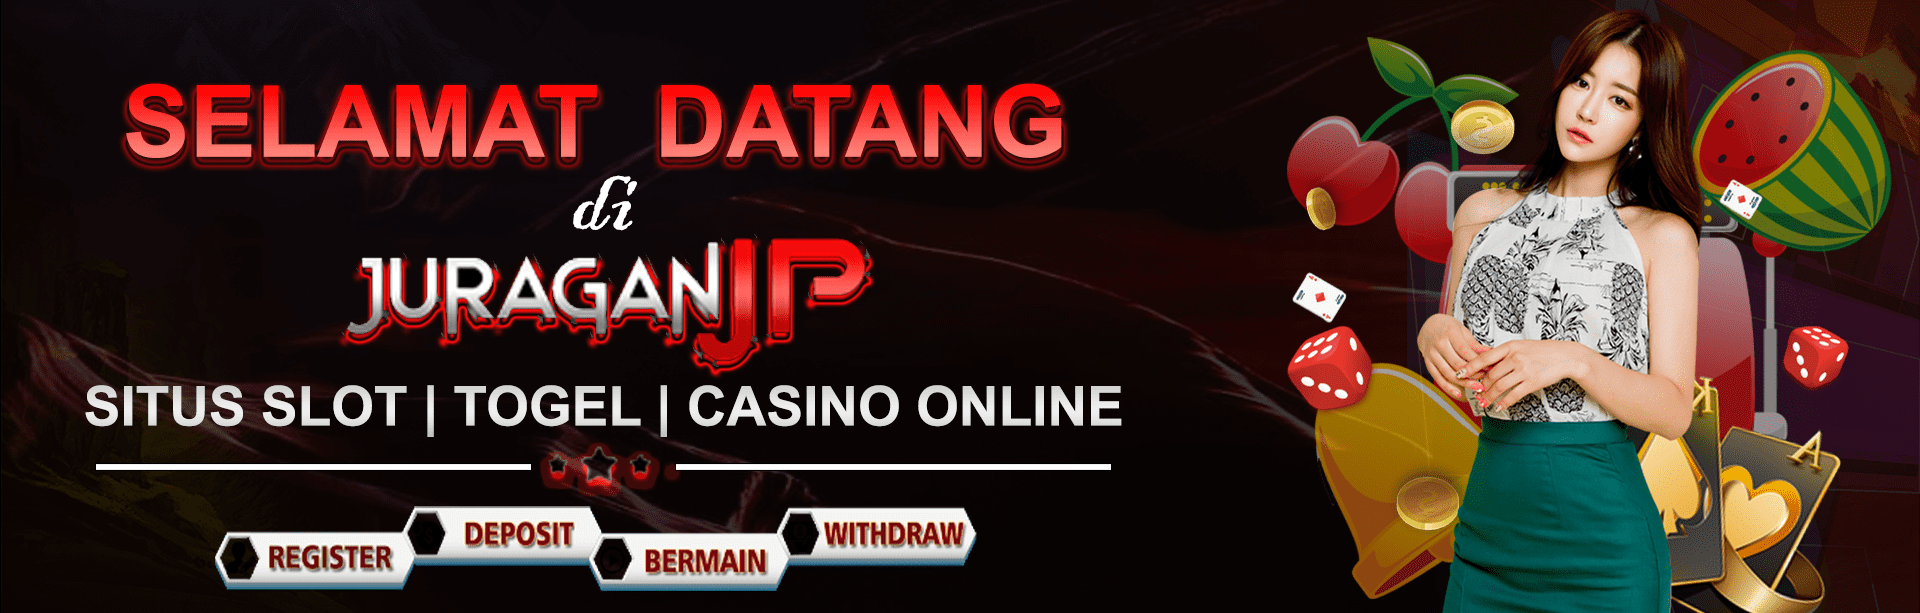 Link Jackpot Slot Online Terbesar | Bo Casino Resmi Terbaik Juragan JP